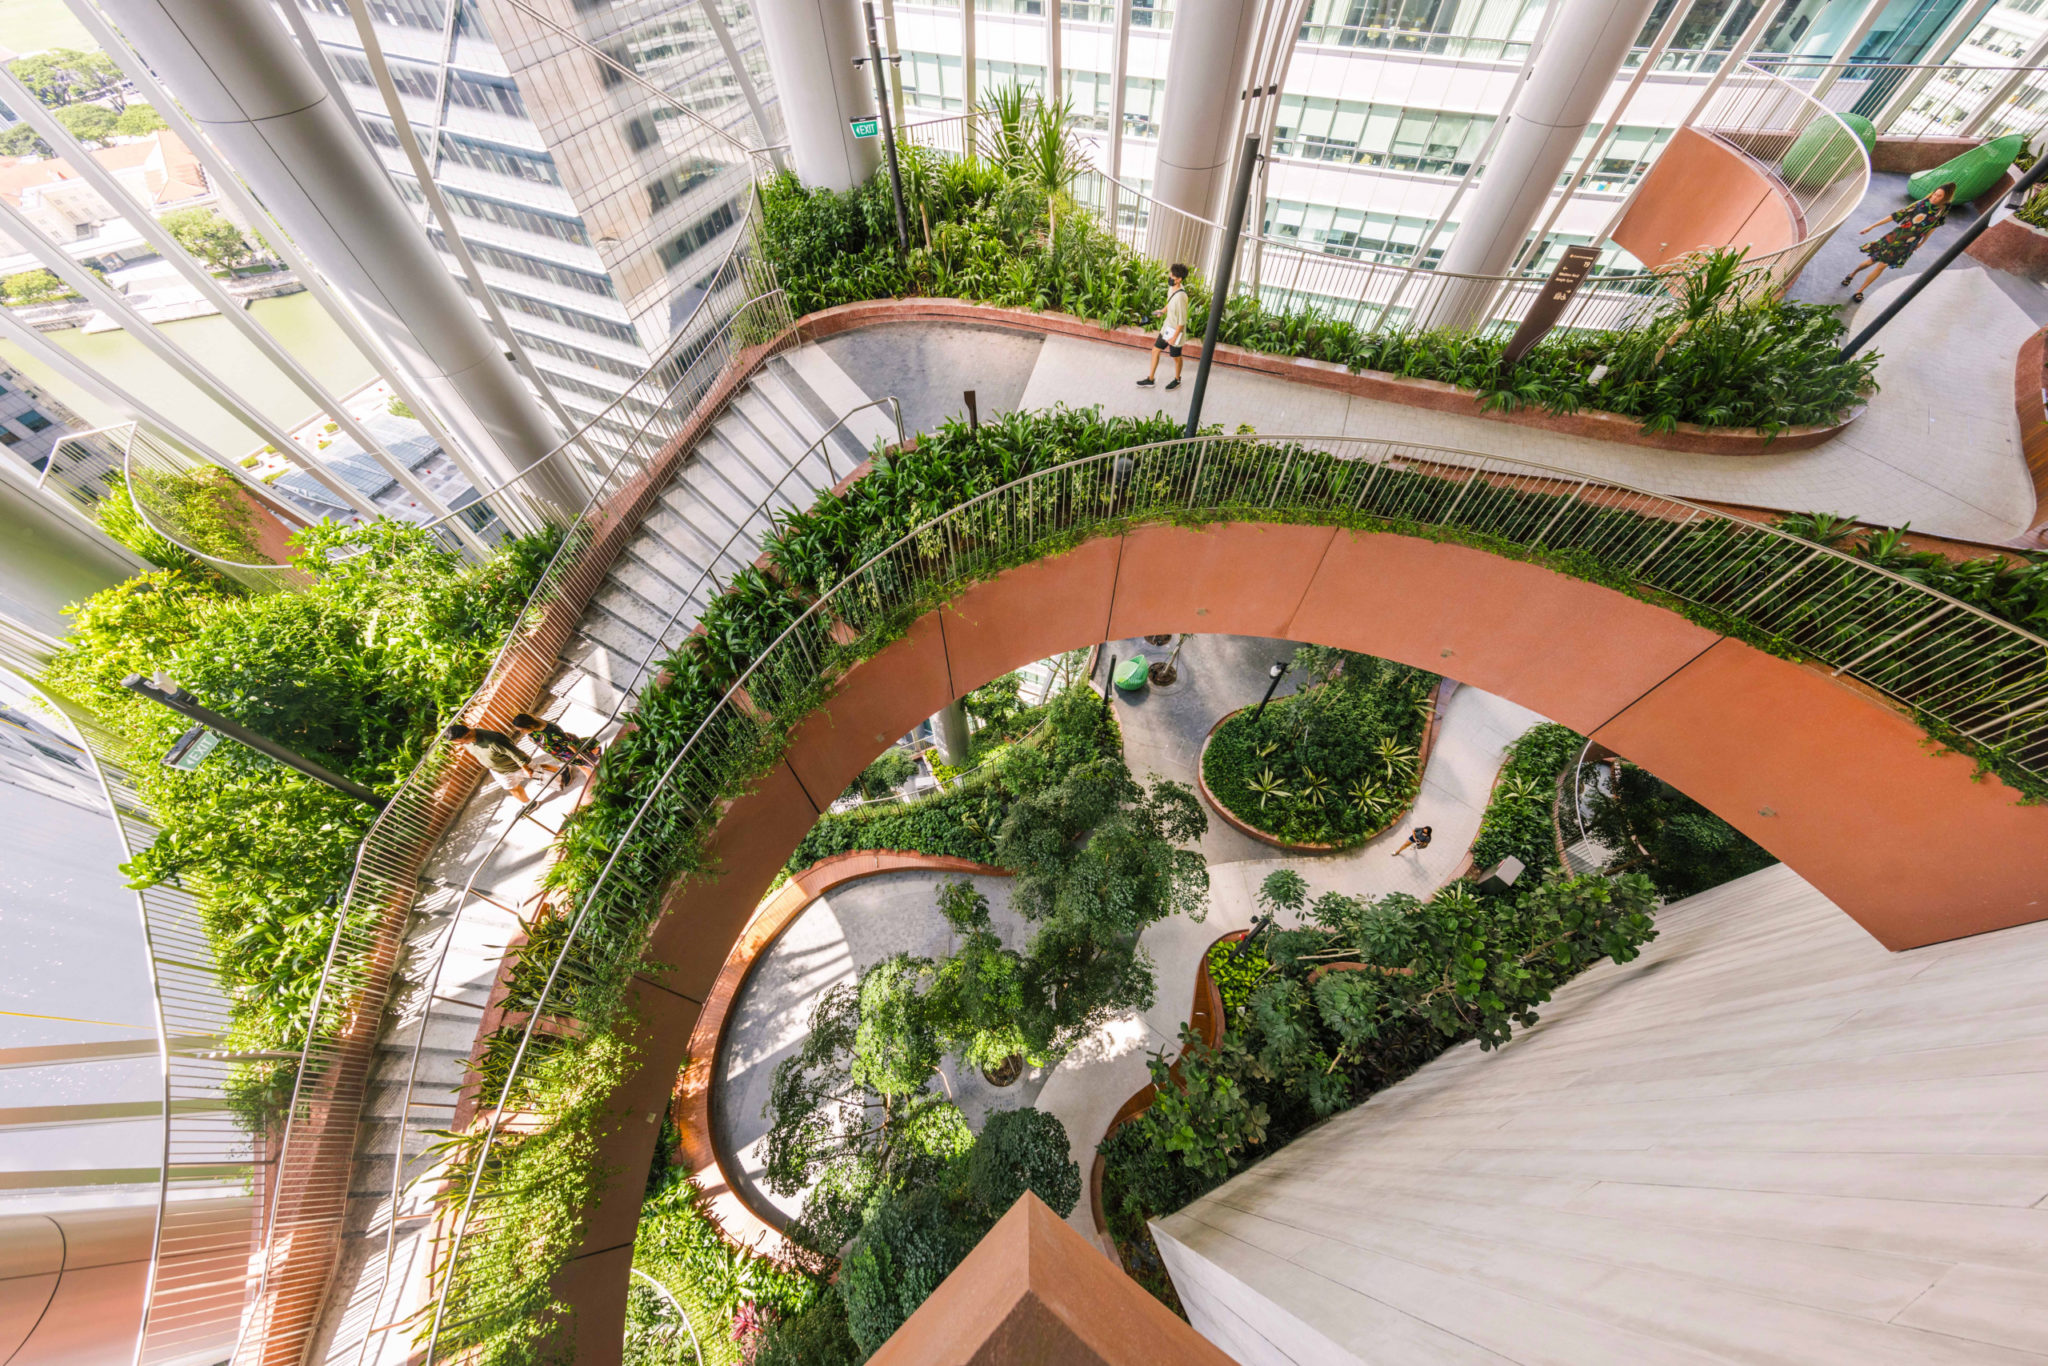 Bjarke Ingels’ biophilic skyscraper completed in Singapore - Global